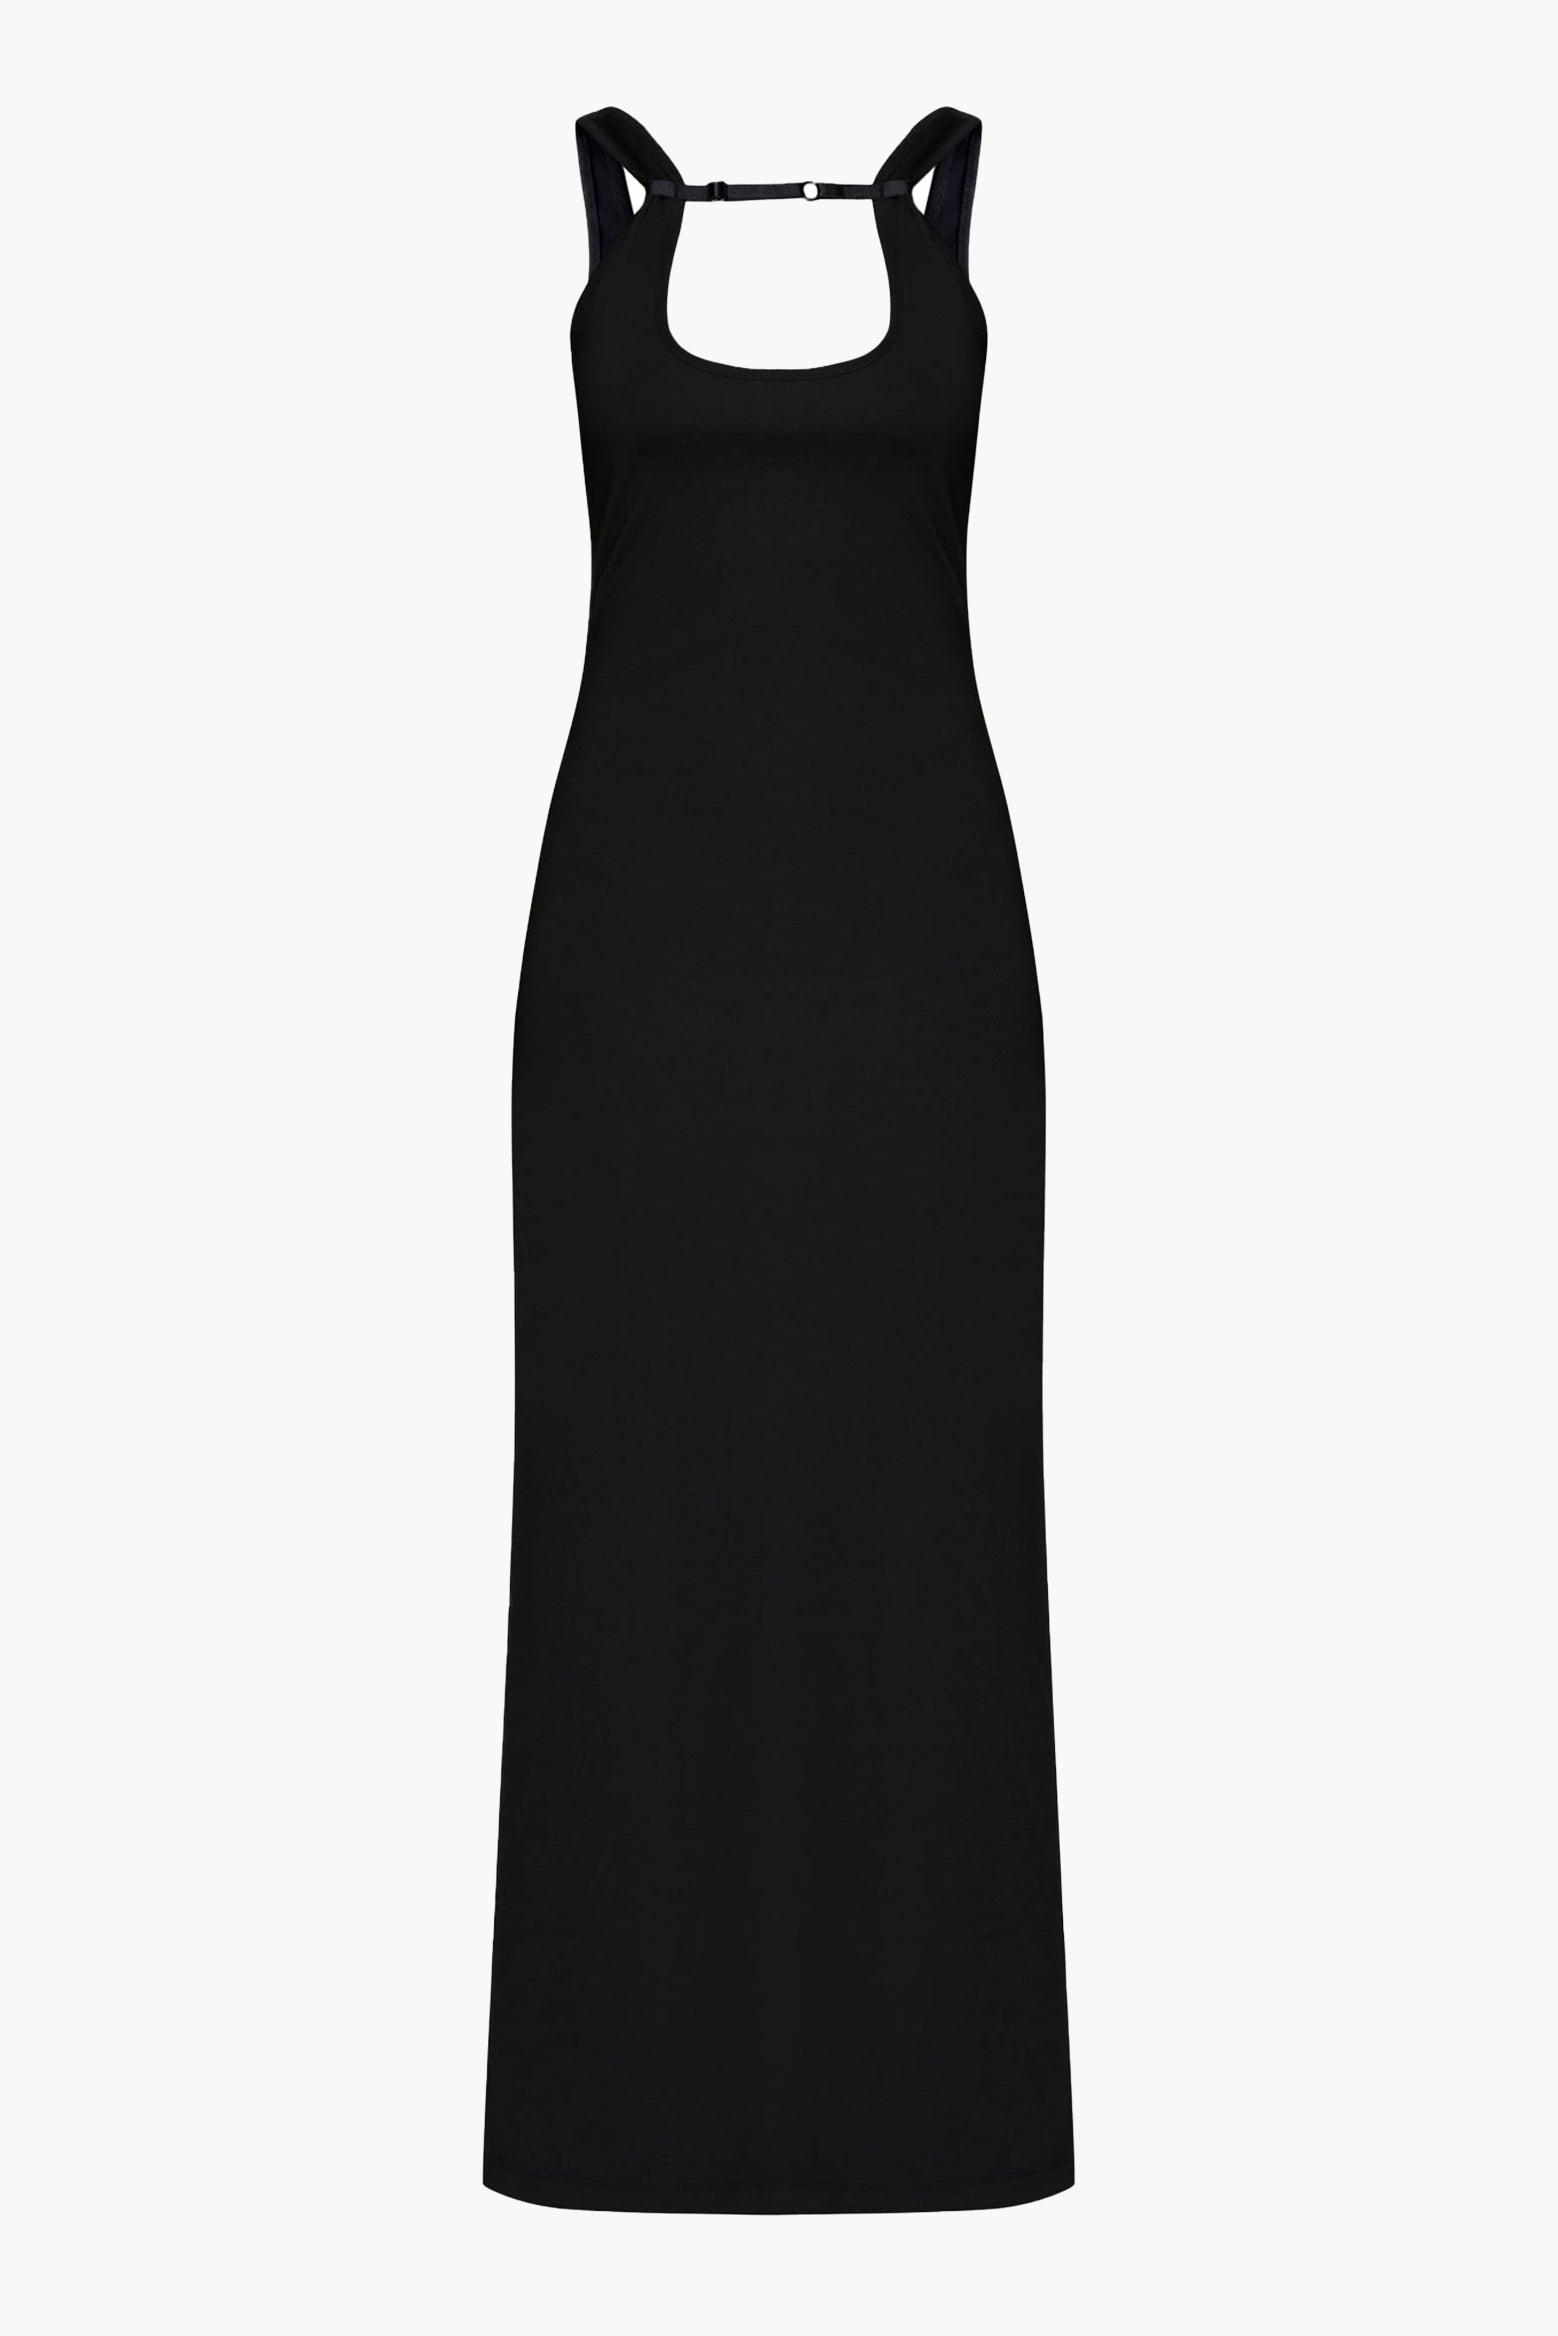 Wynn Hamlyn Rib Strap Maxi Dress in Black available at The New Trend Australia.